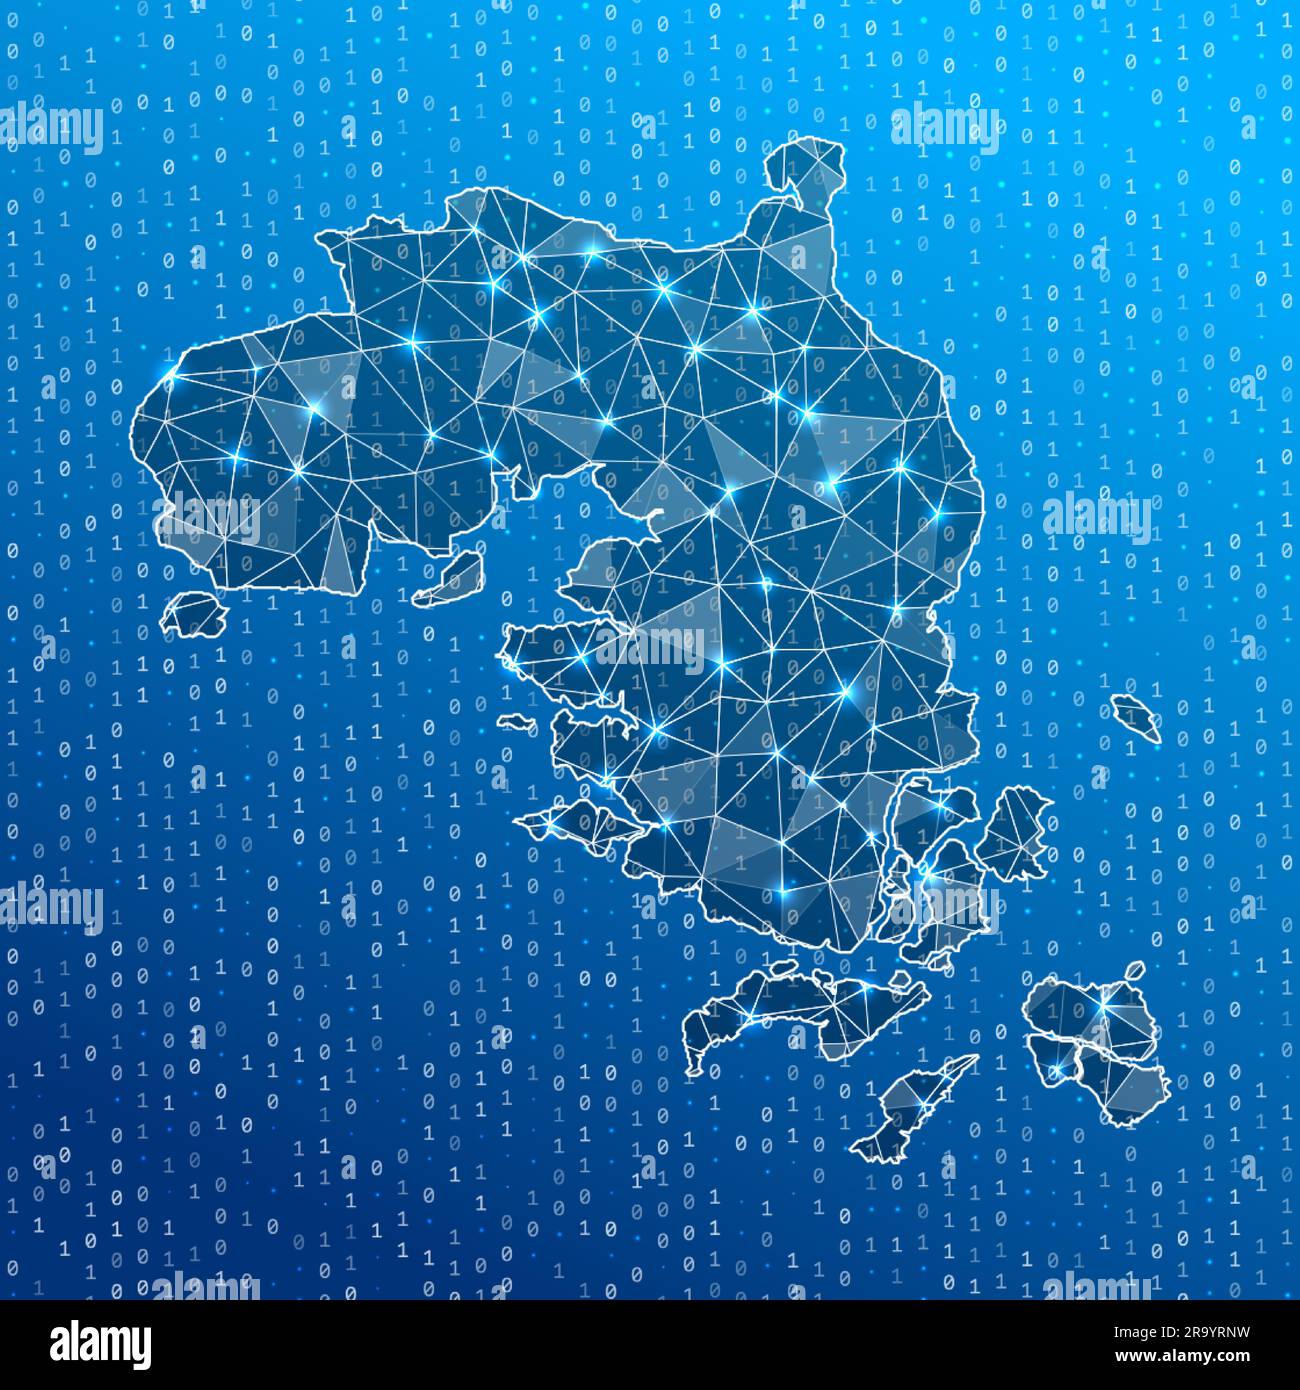 Netzwerkkarte der Insel Bintan. Karte der digitalen Verbindungen der Insel. Technologie, Internet, Netzwerk, Telekommunikationskonzept. Vektordarstellung. Stock Vektor